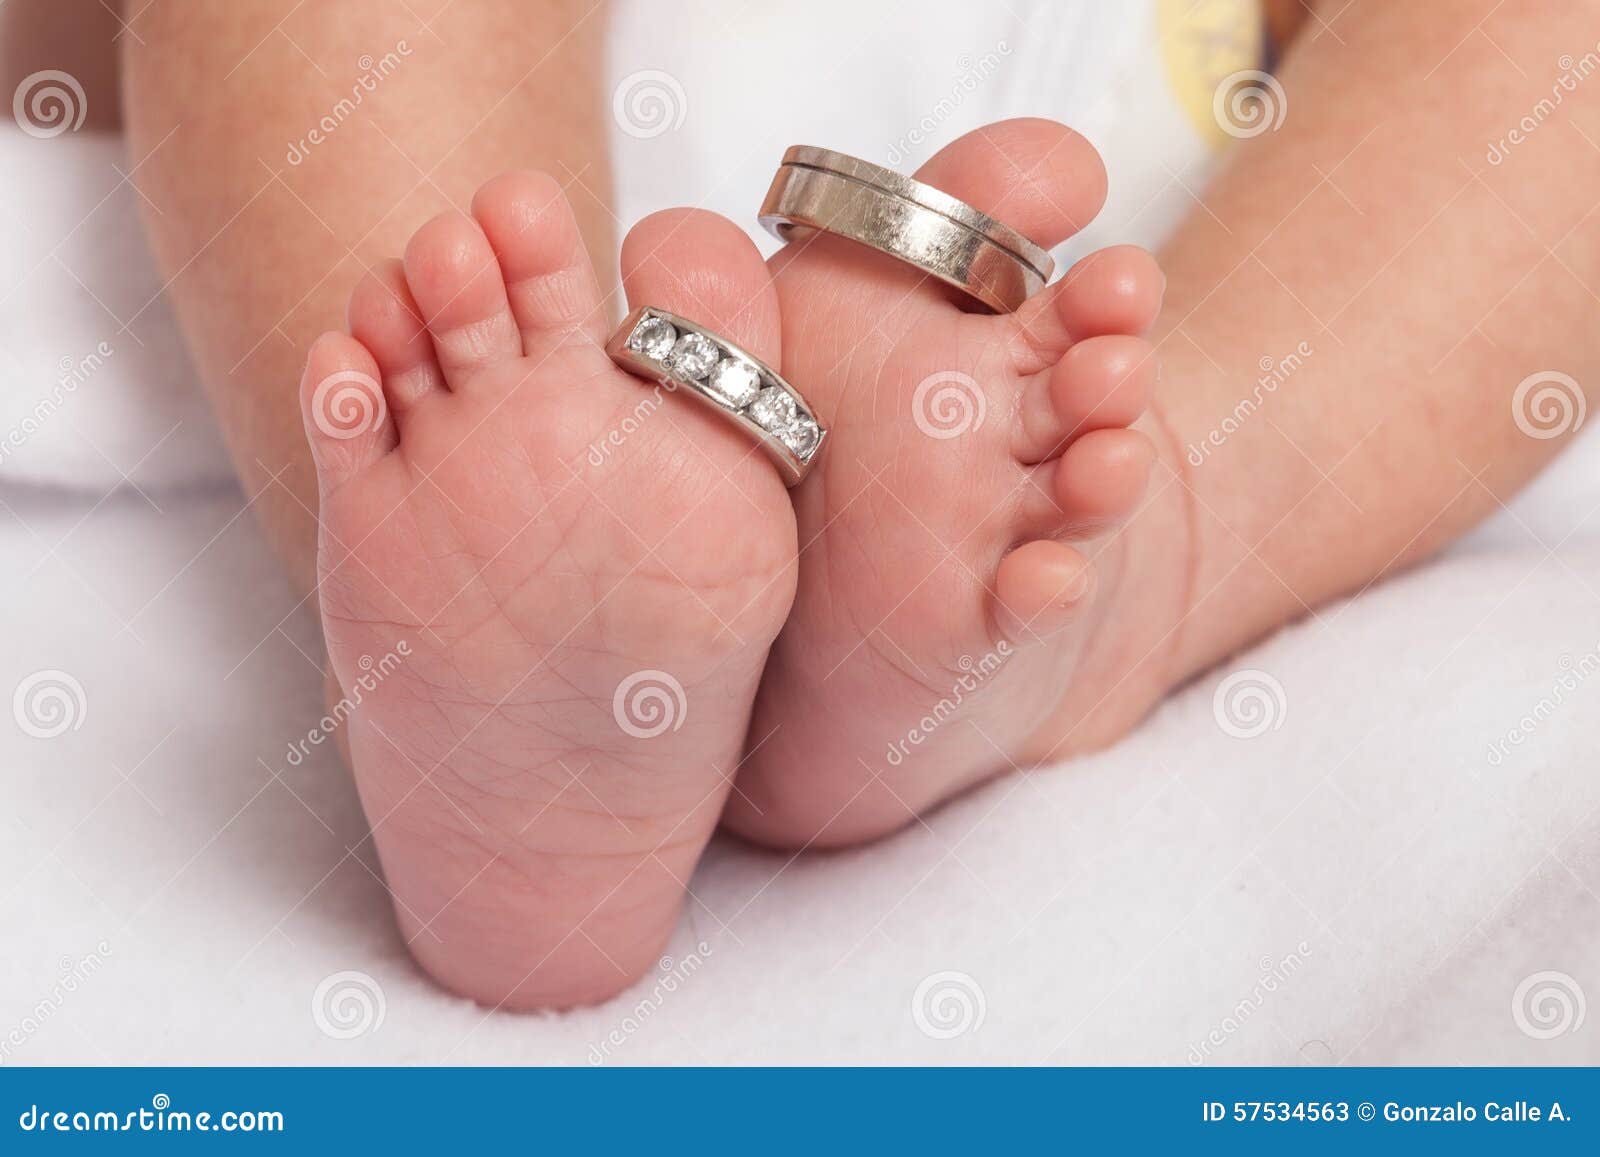 Pieds De Bebe Avec Des Parents D Anneaux De Mariage Image Stock Image Du Cheri Avec